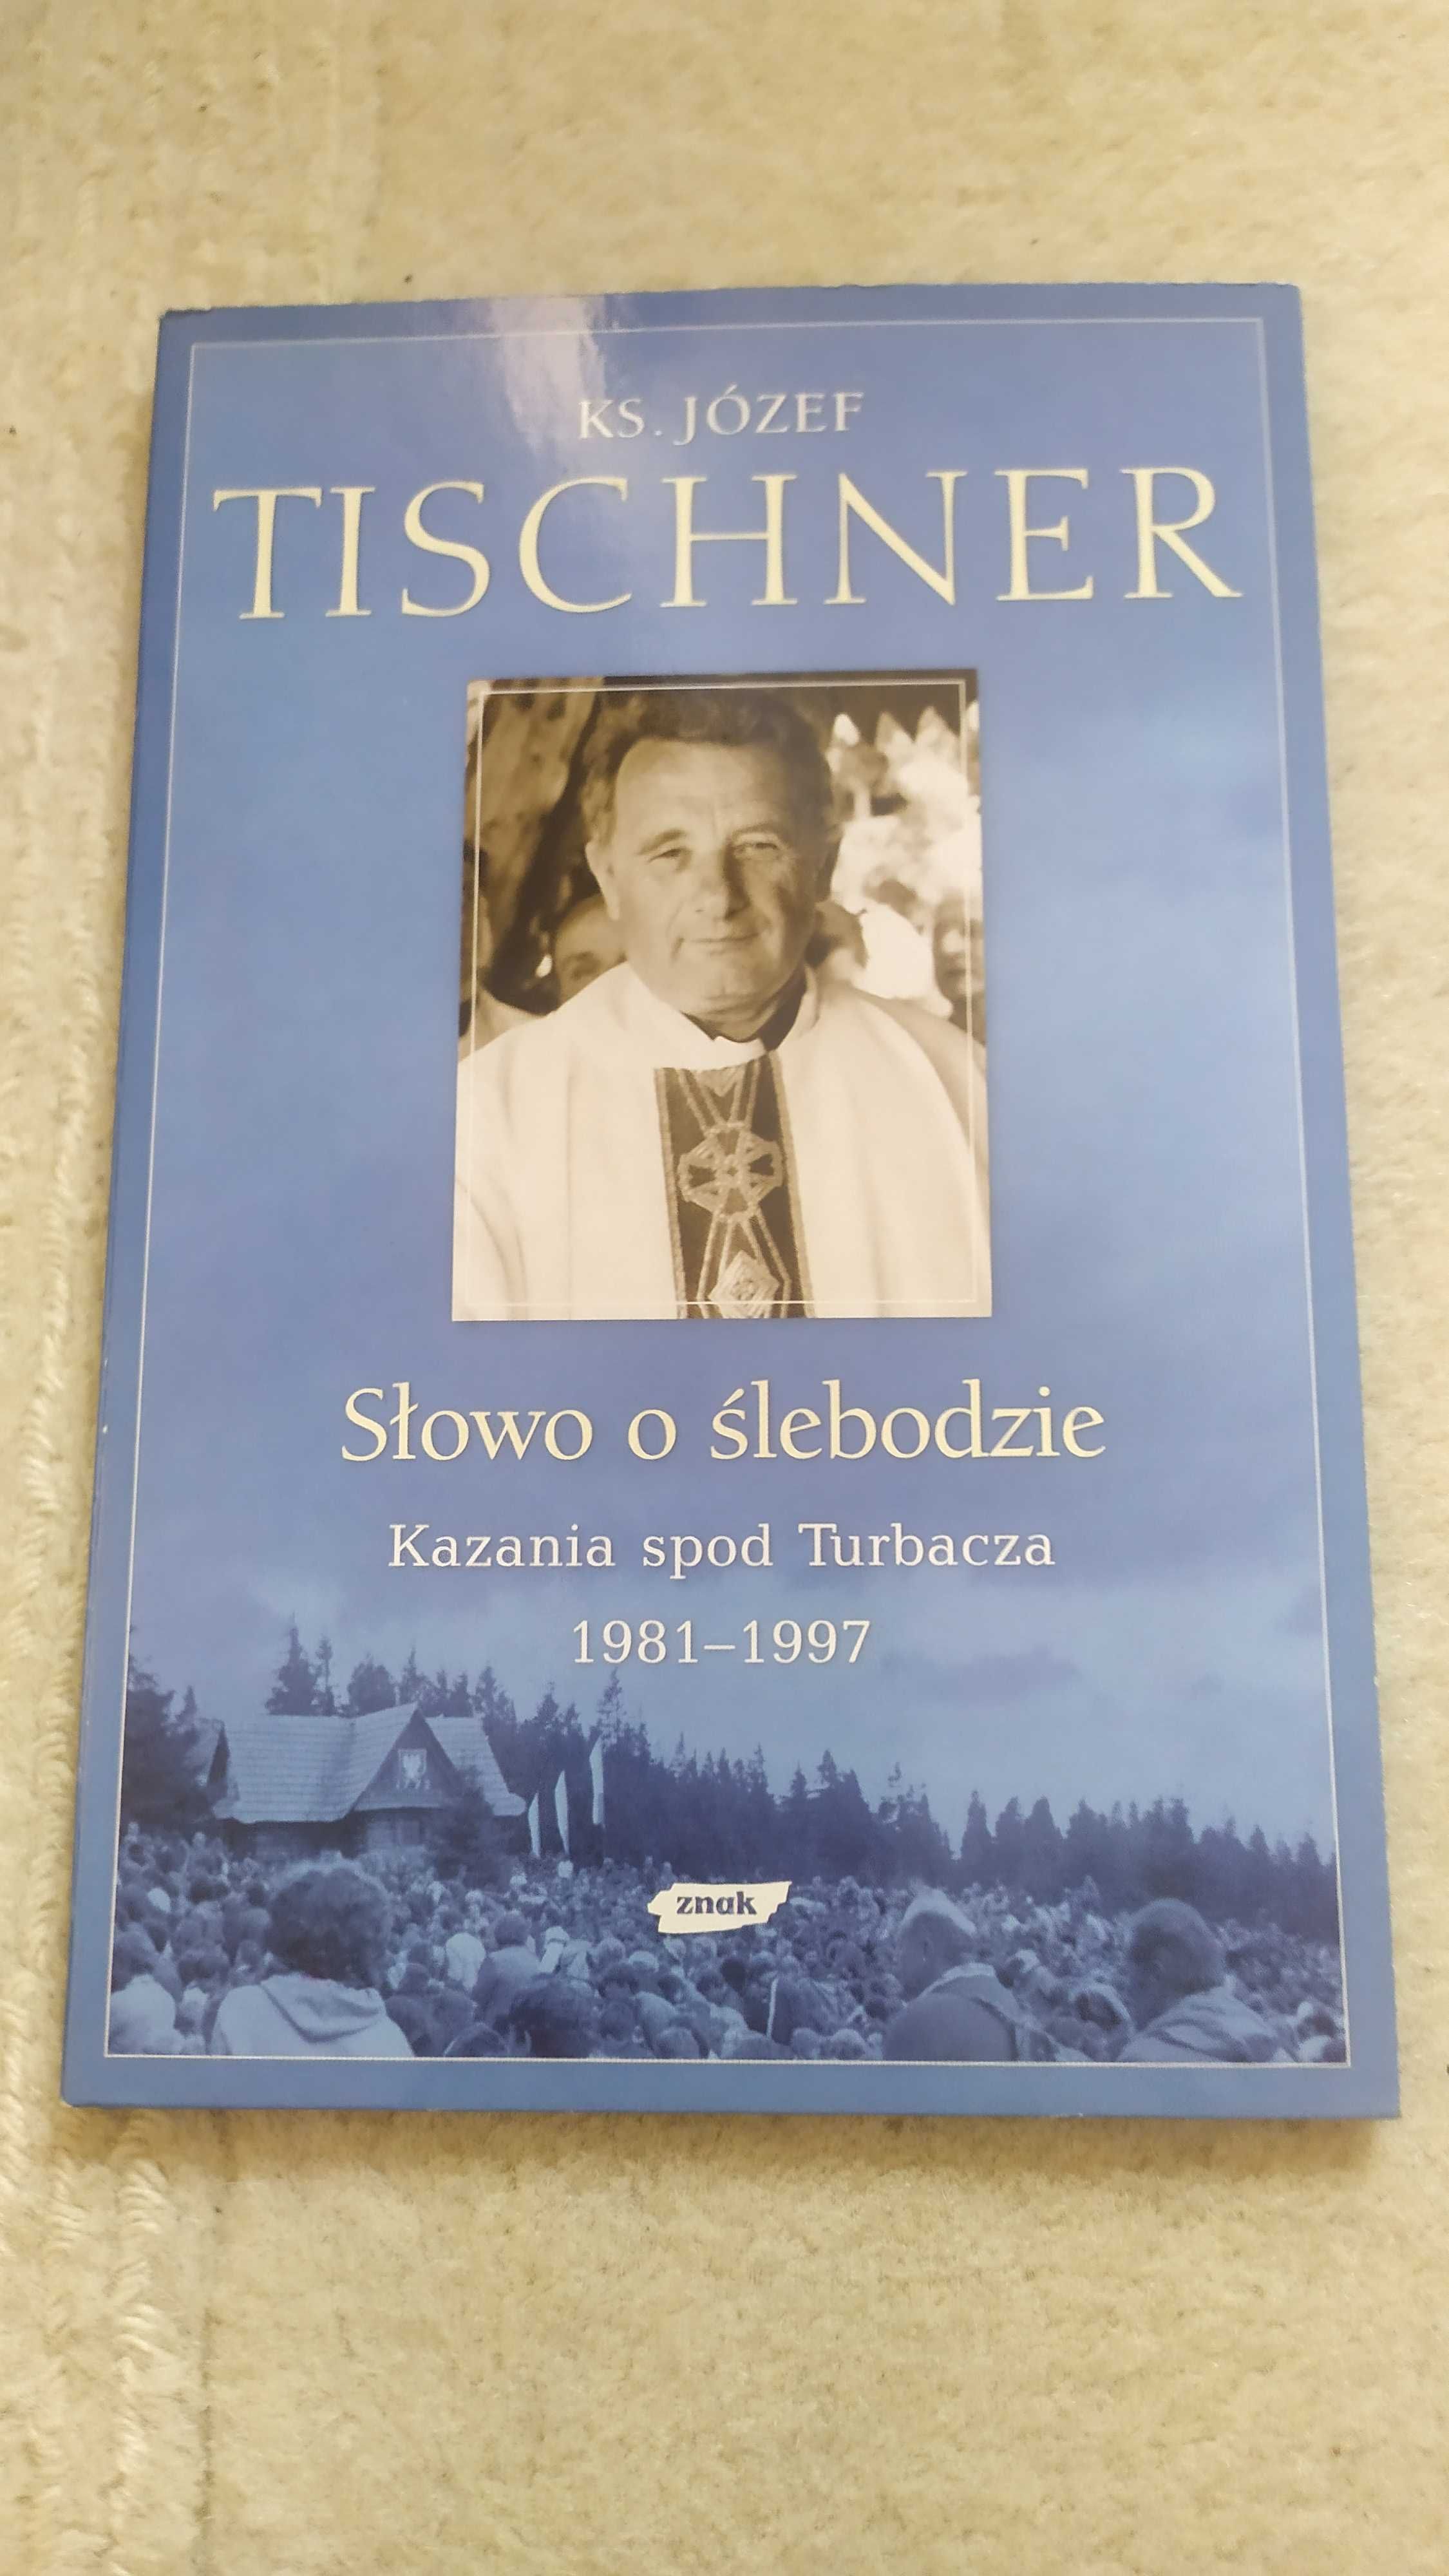 cztery płyty CD wraz z książką, Słowo o ślebodzie ks. Józefa Tischnera